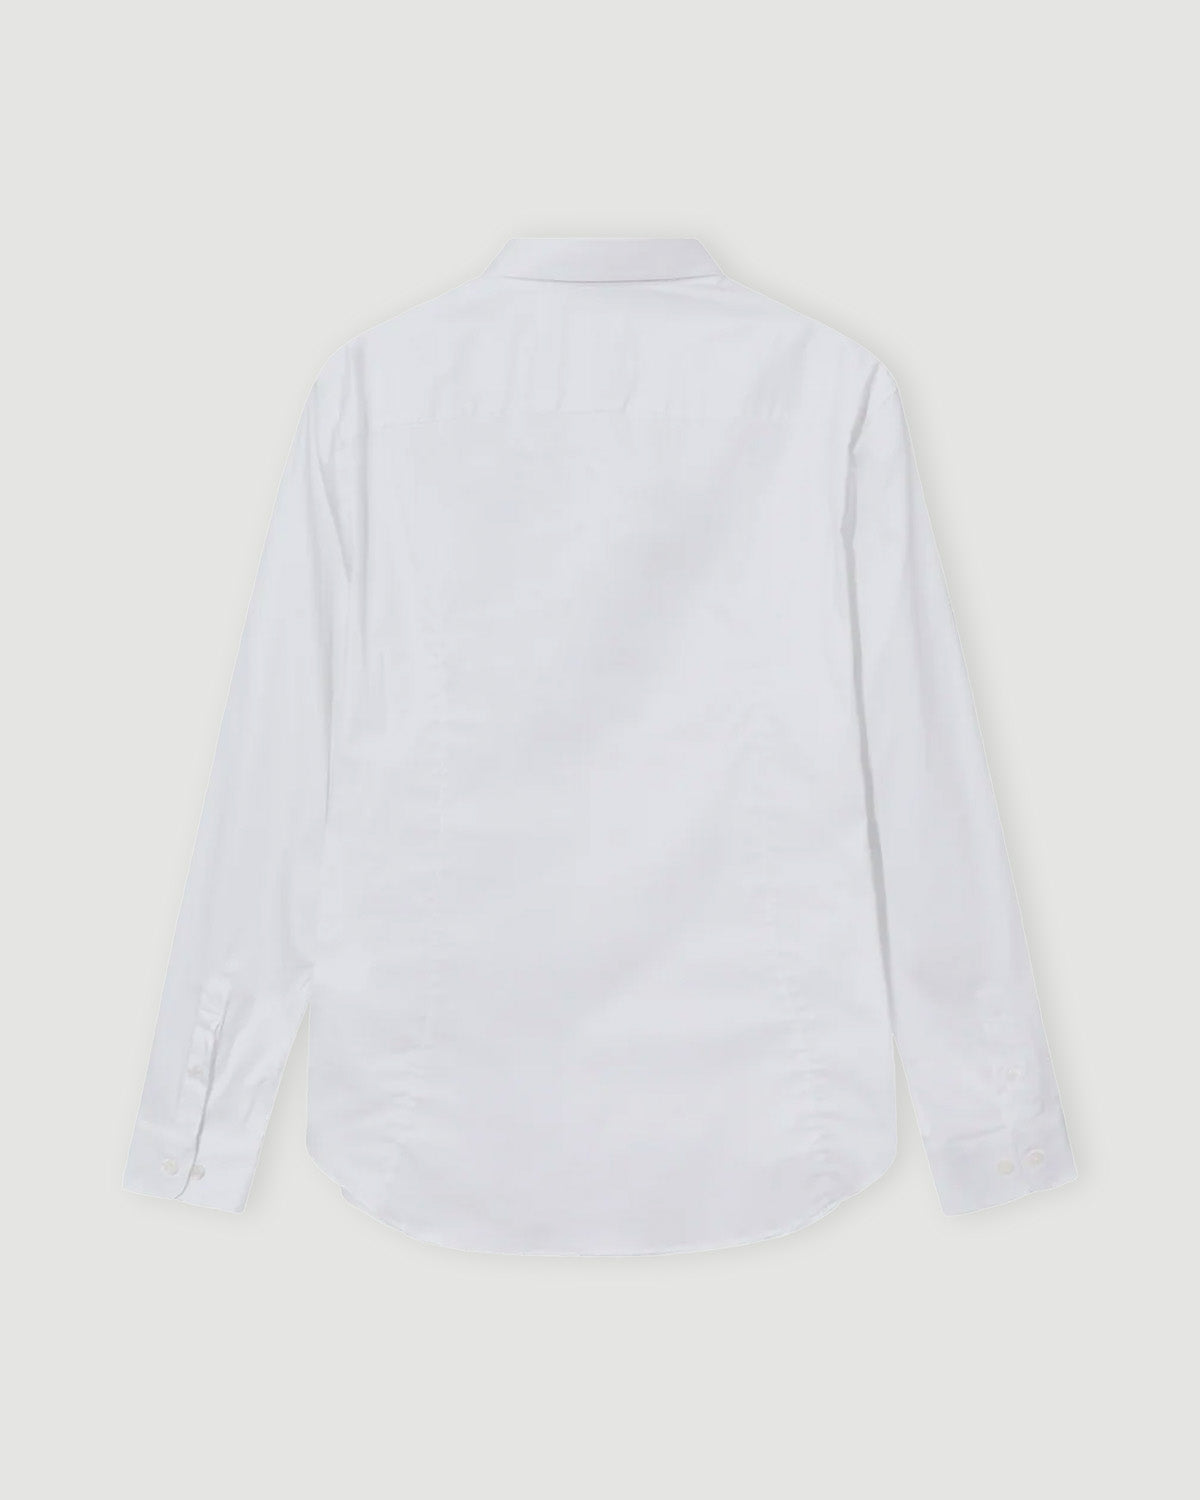 Manny Stretch Shirt - White